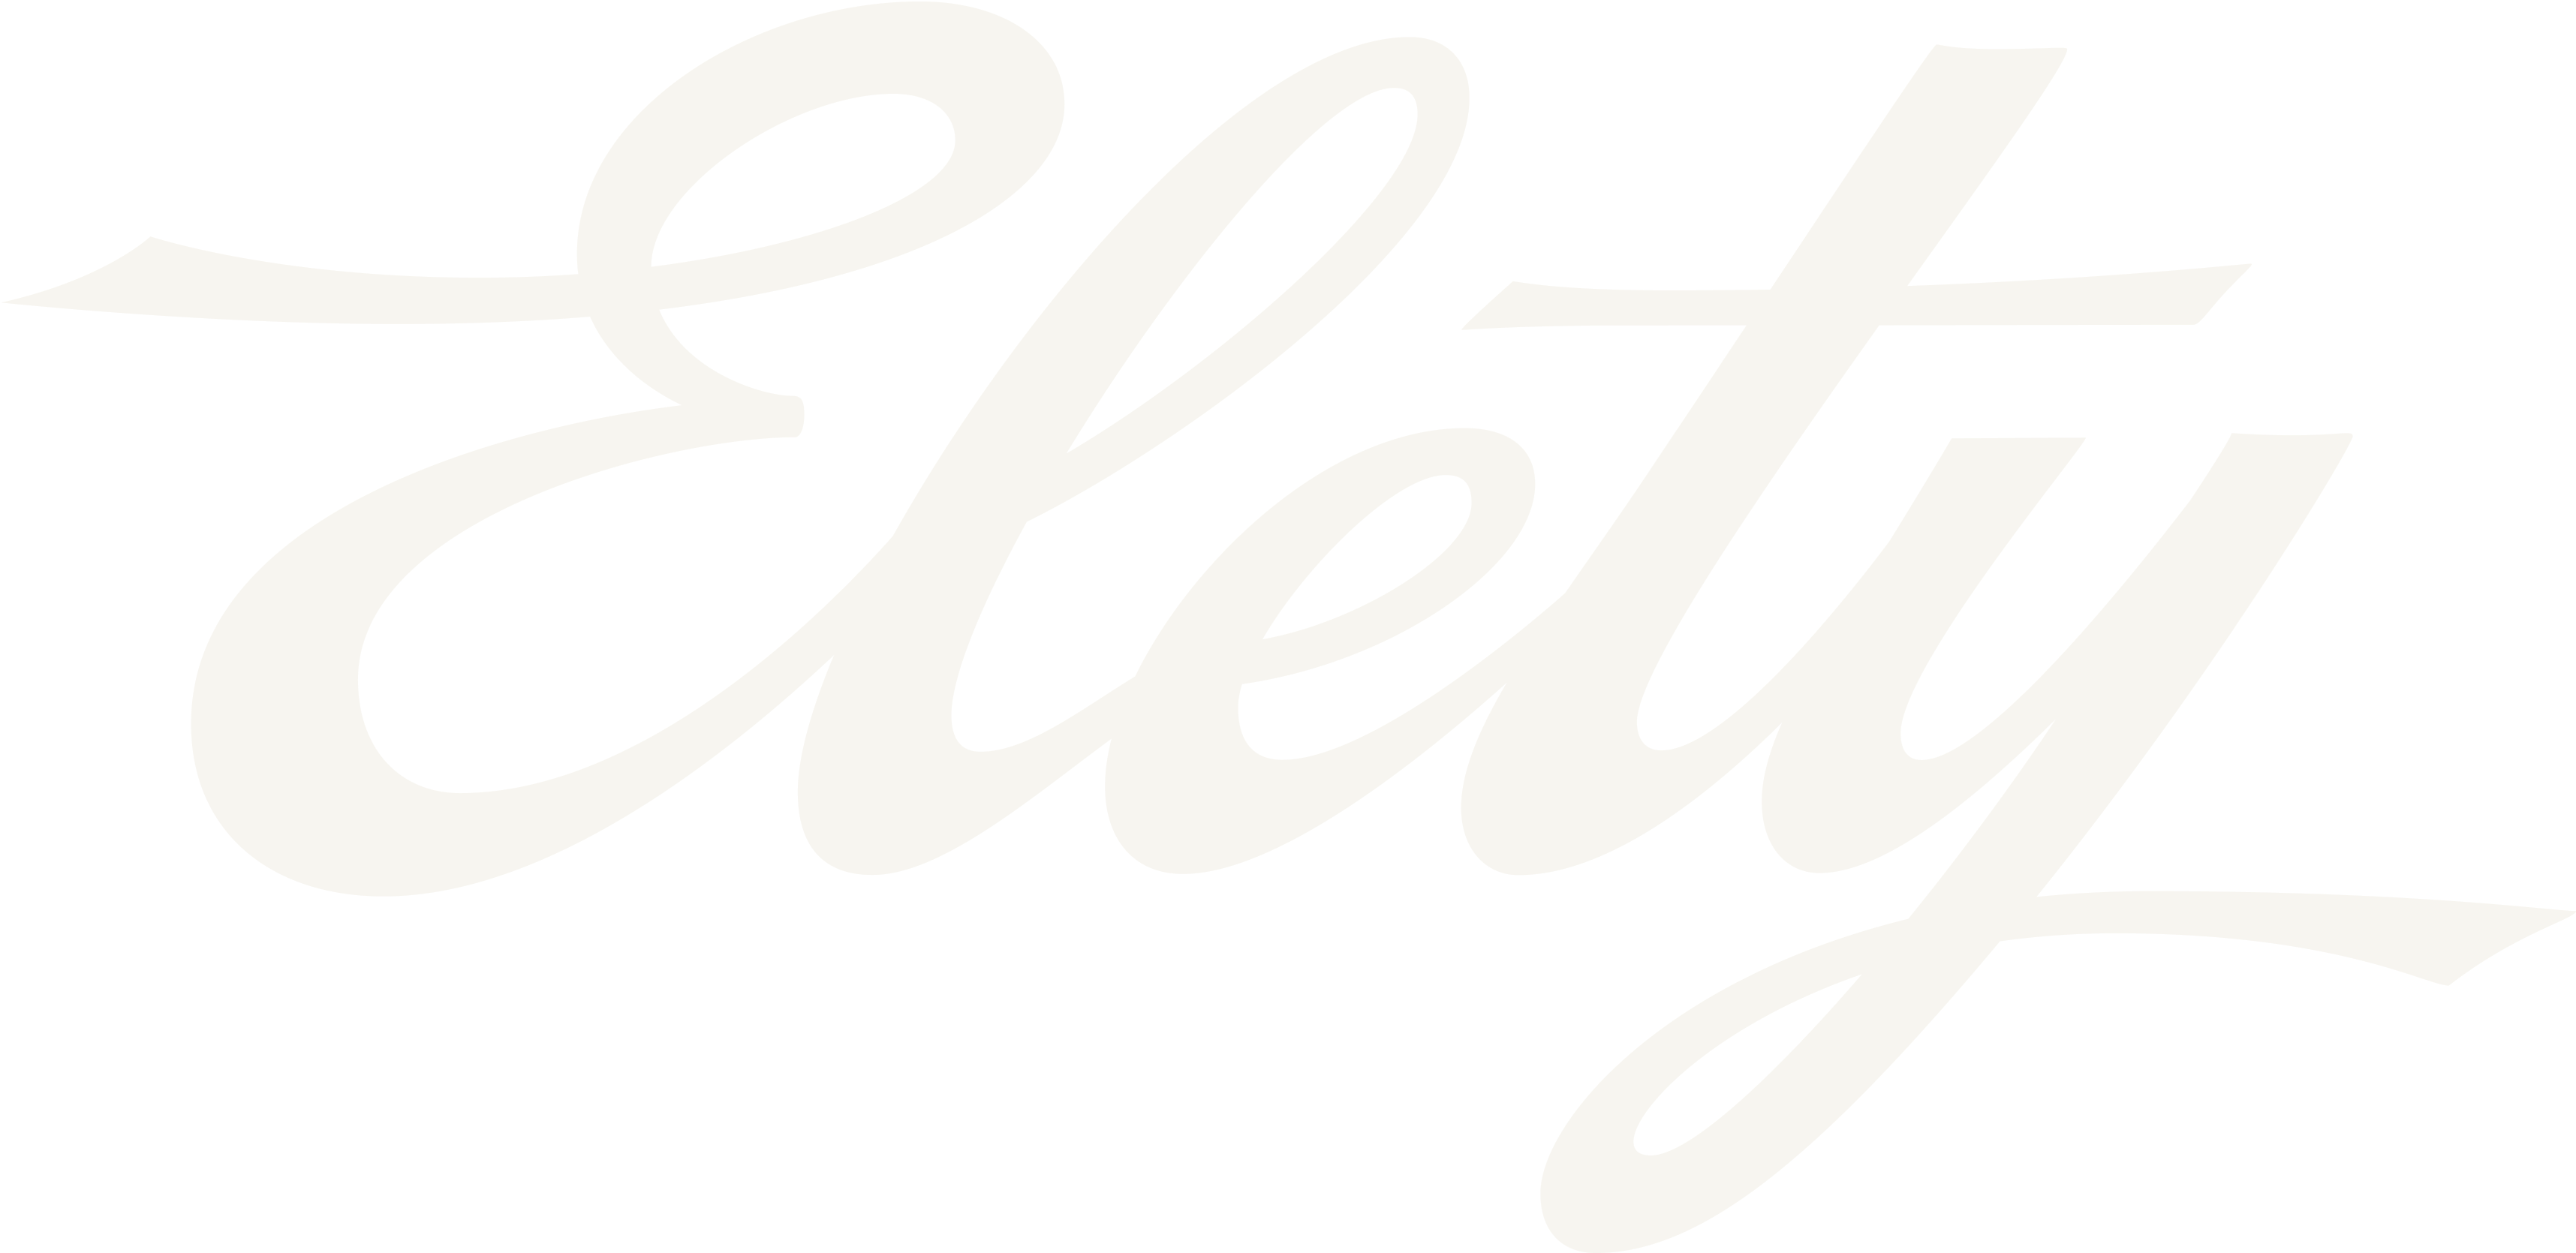 Elety logo without background